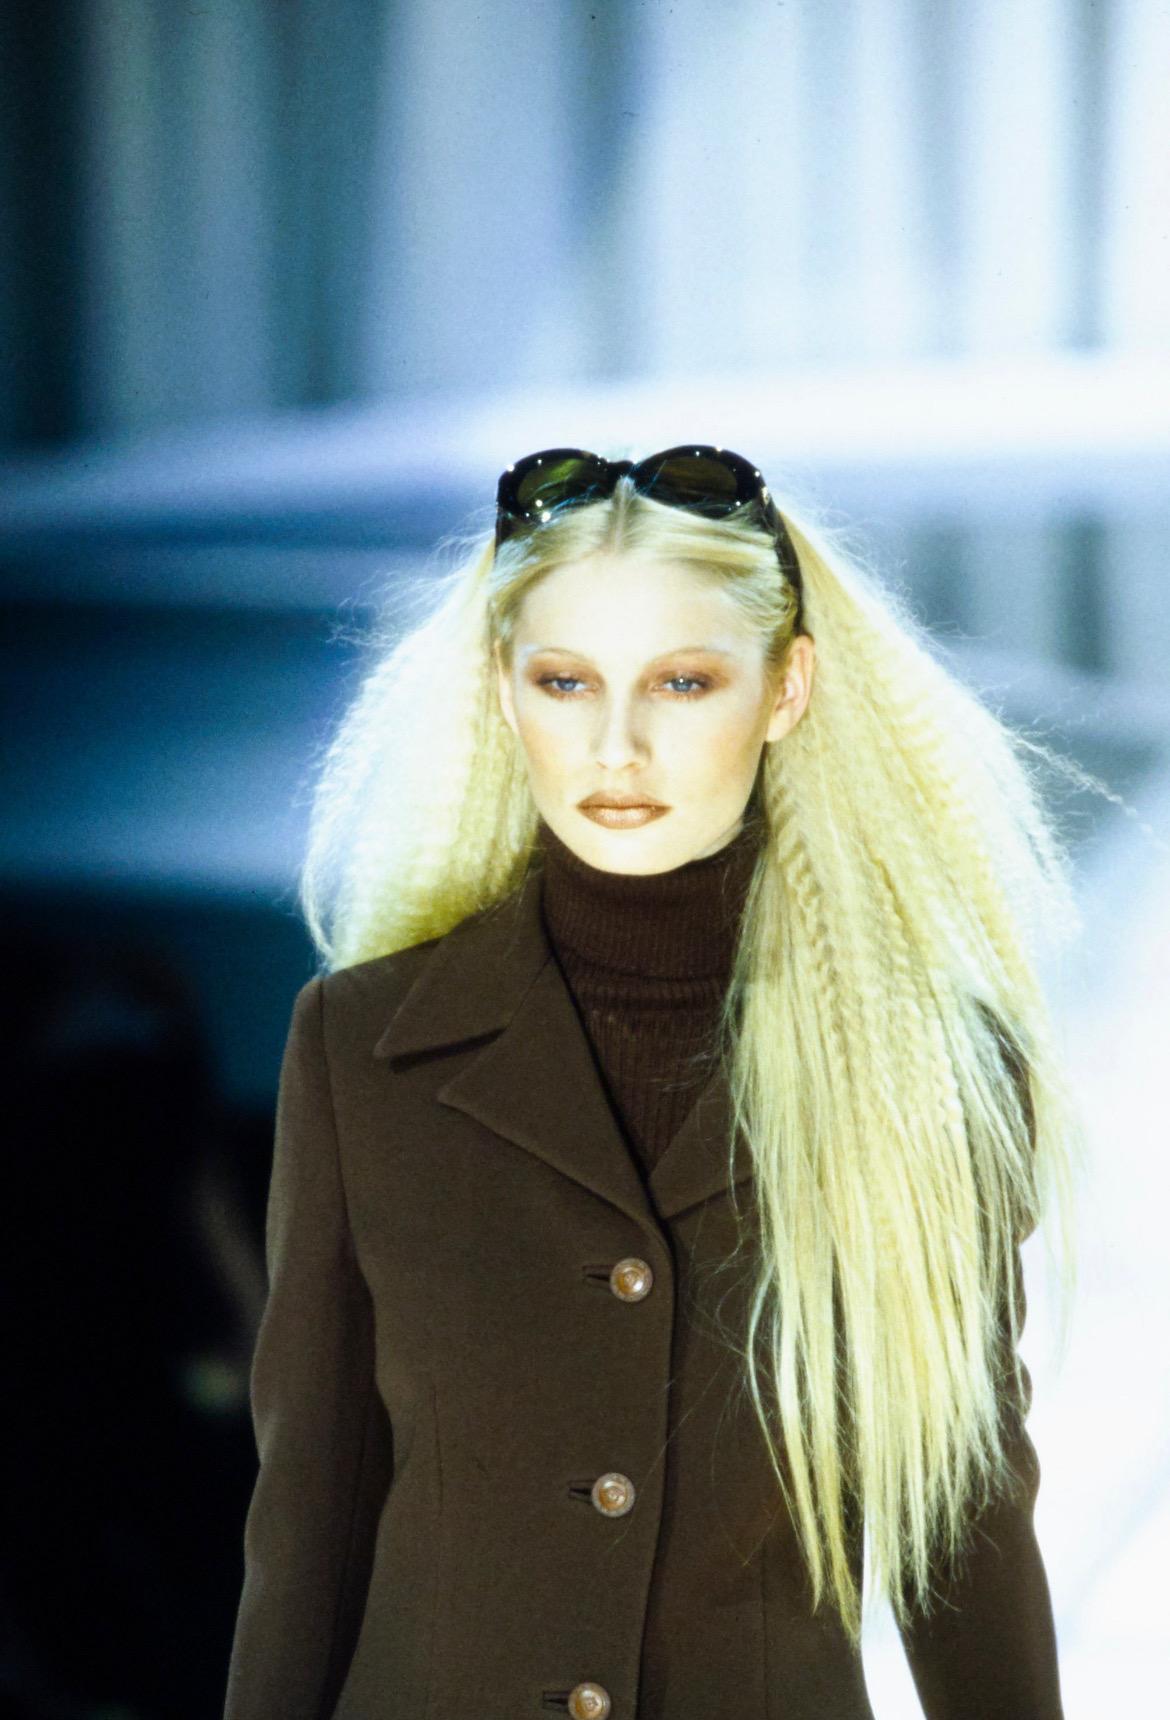 Nous vous présentons une paire de lunettes de soleil Gianni Versace accentuée de croc marron, conçue par Gianni Versace. Issues de la collection automne-hiver 1996, ces lunettes de soleil ont fait leur apparition dans le look 8, portées par Kirsty